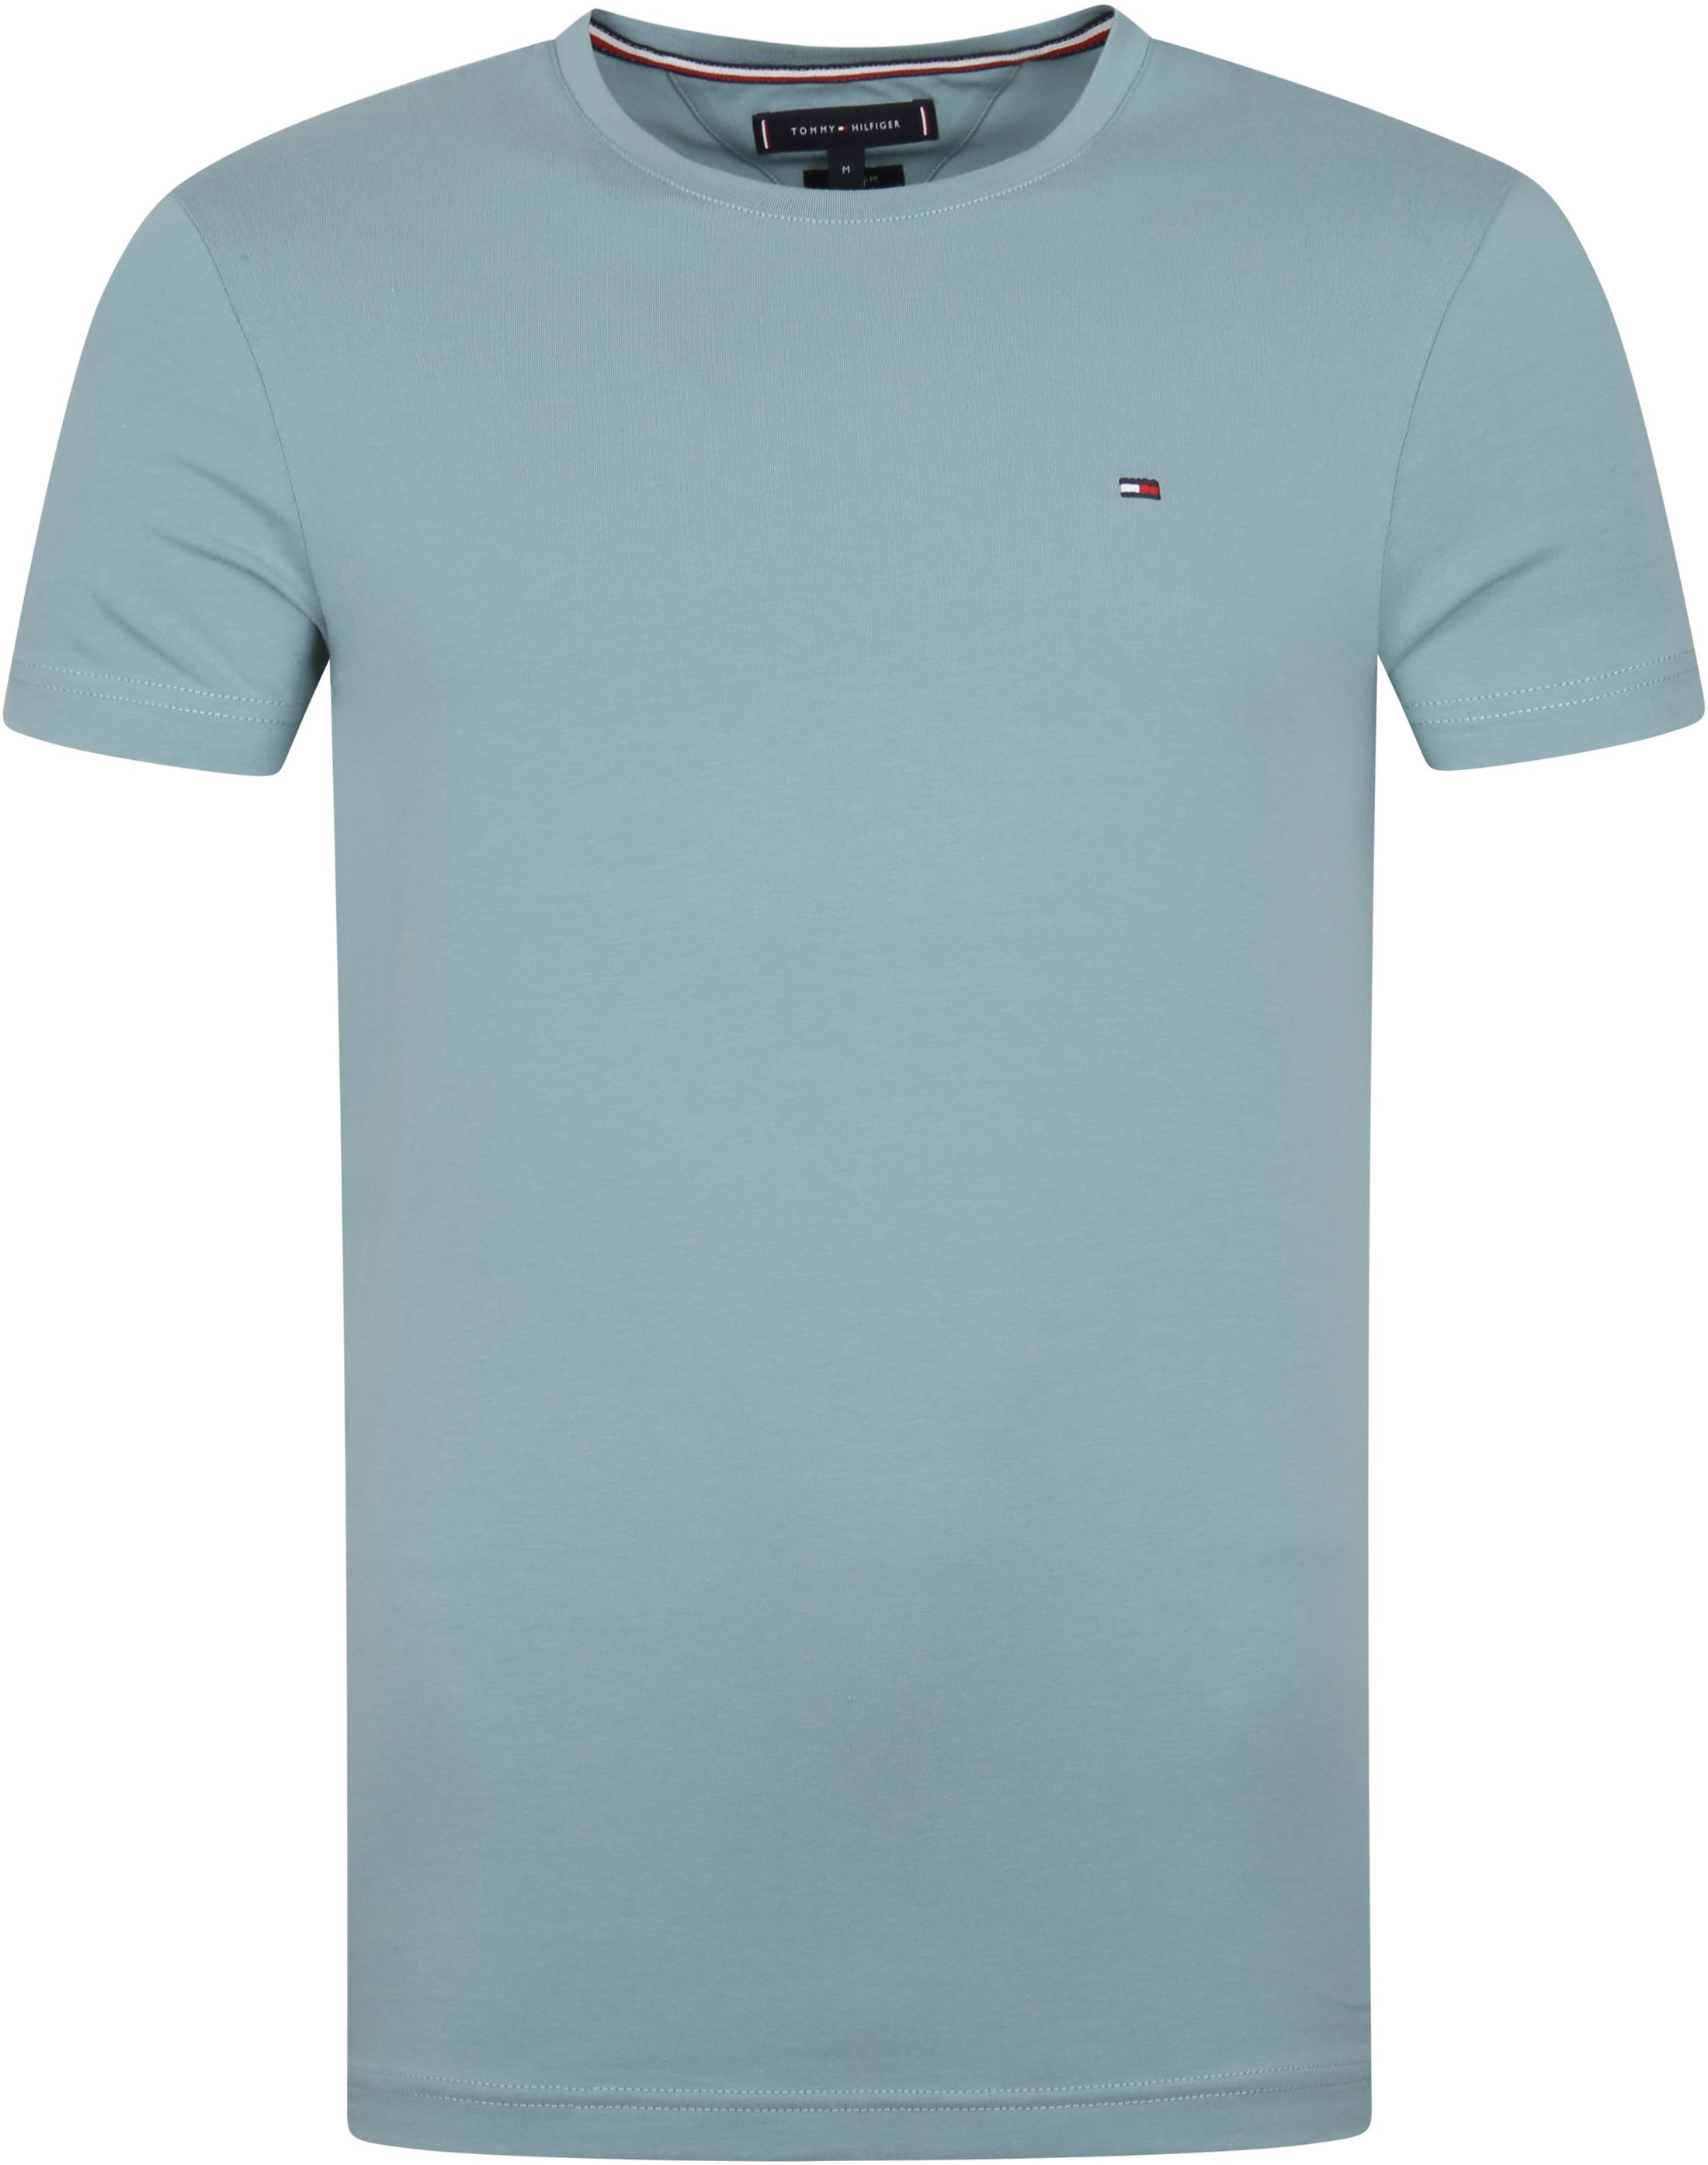 Tommy Hilfiger Stretch T-shirt Light Blue size S